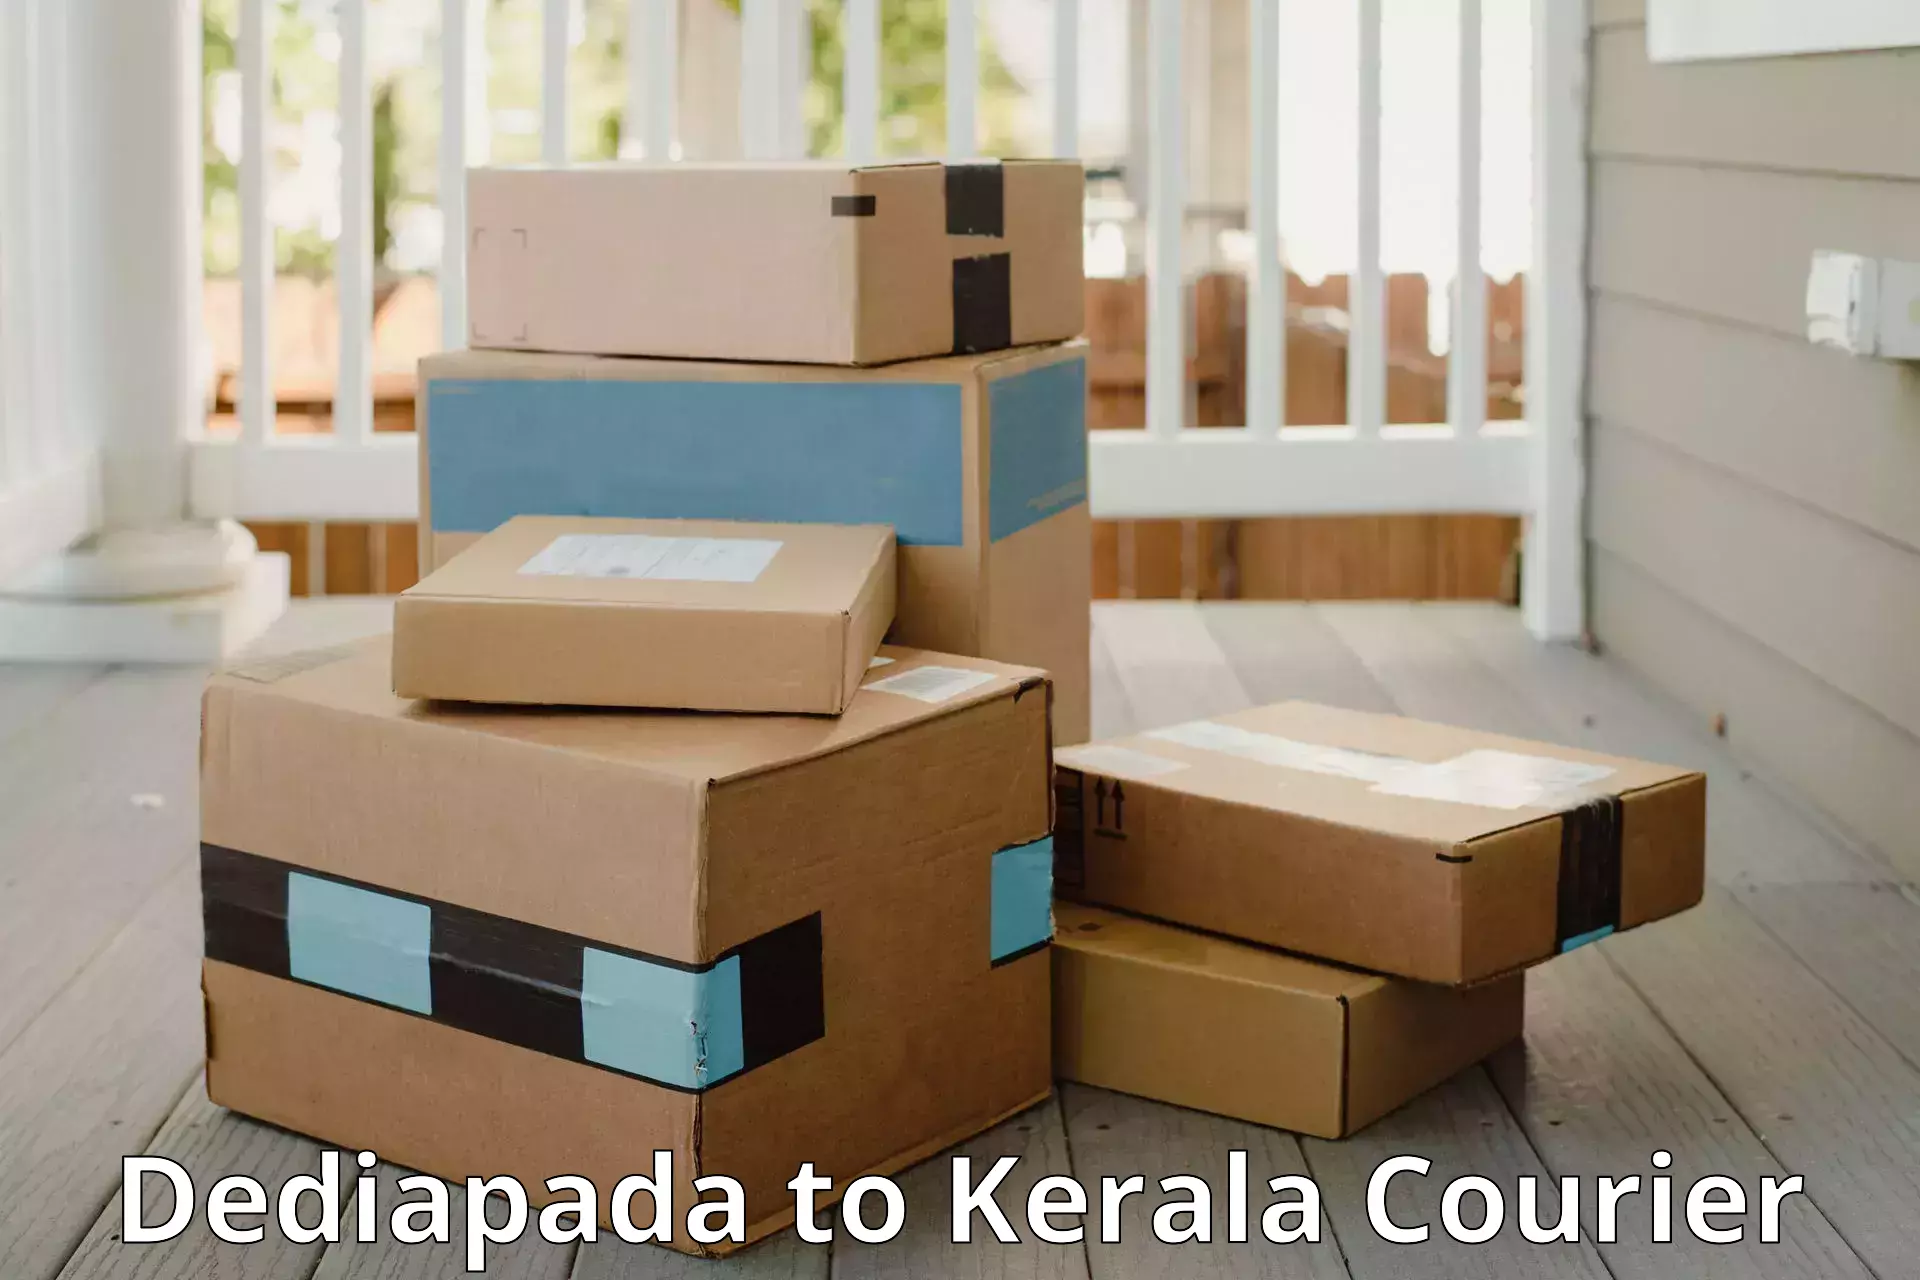 Personal effects shipping Dediapada to Kerala